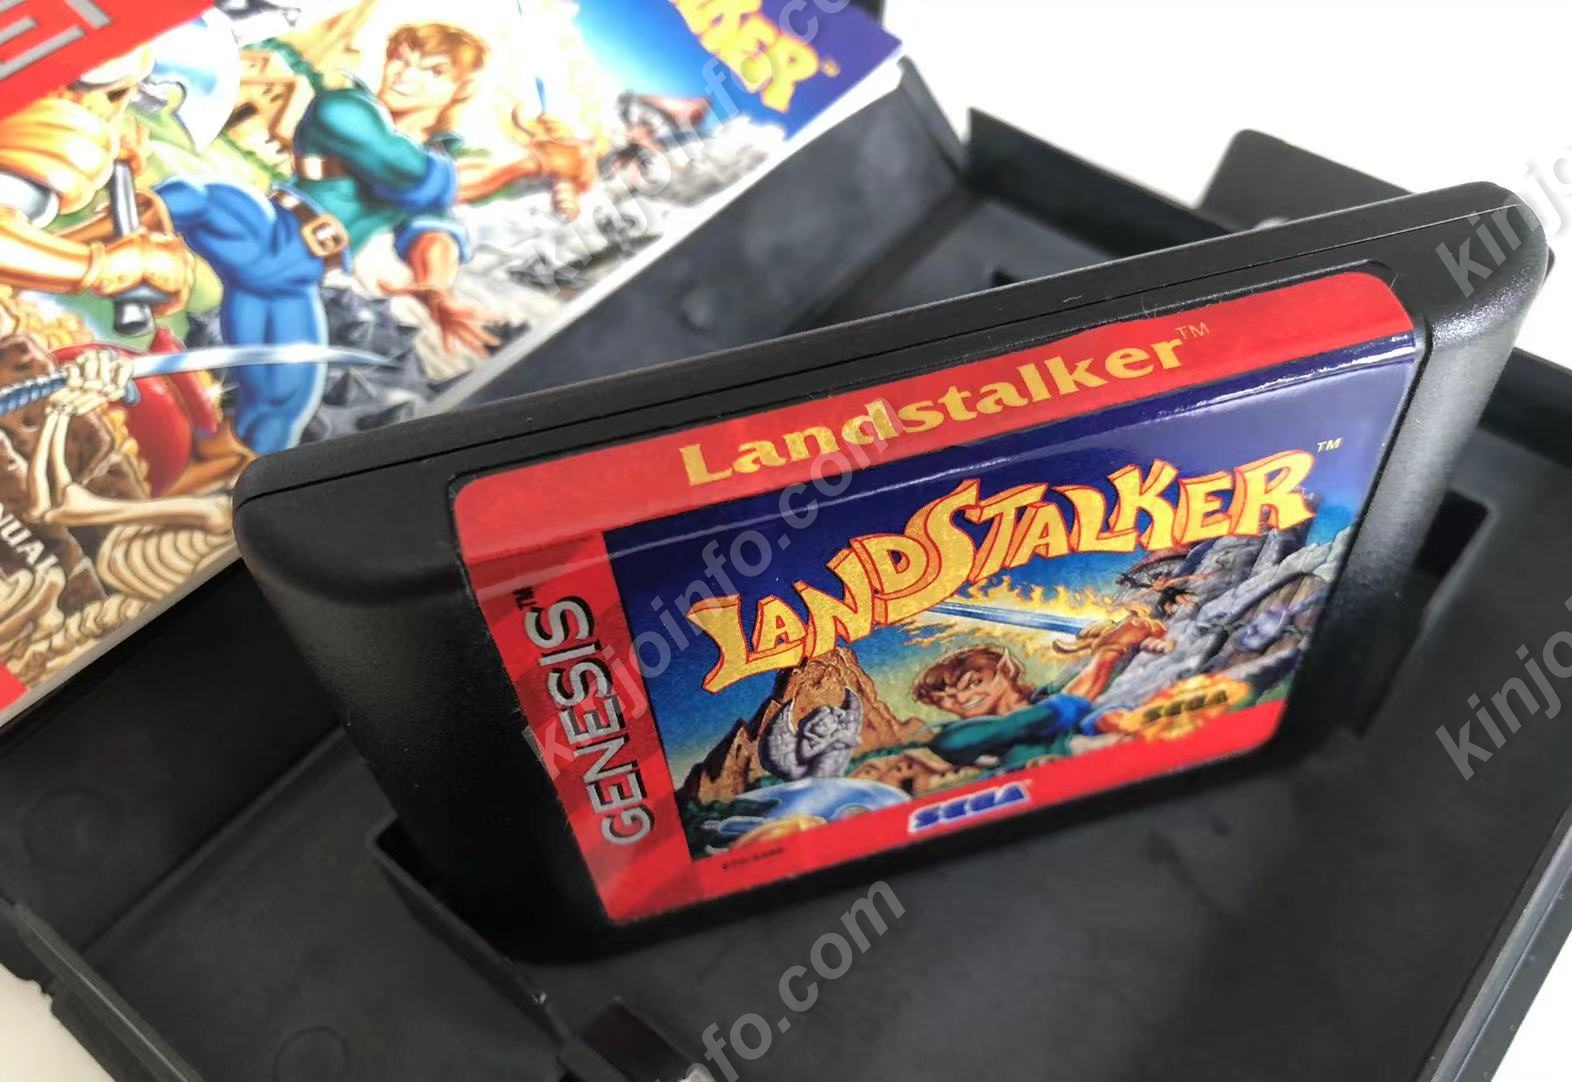 Landstalker（ランドストーカー 〜皇帝の財宝〜）【中古・通常版・北米